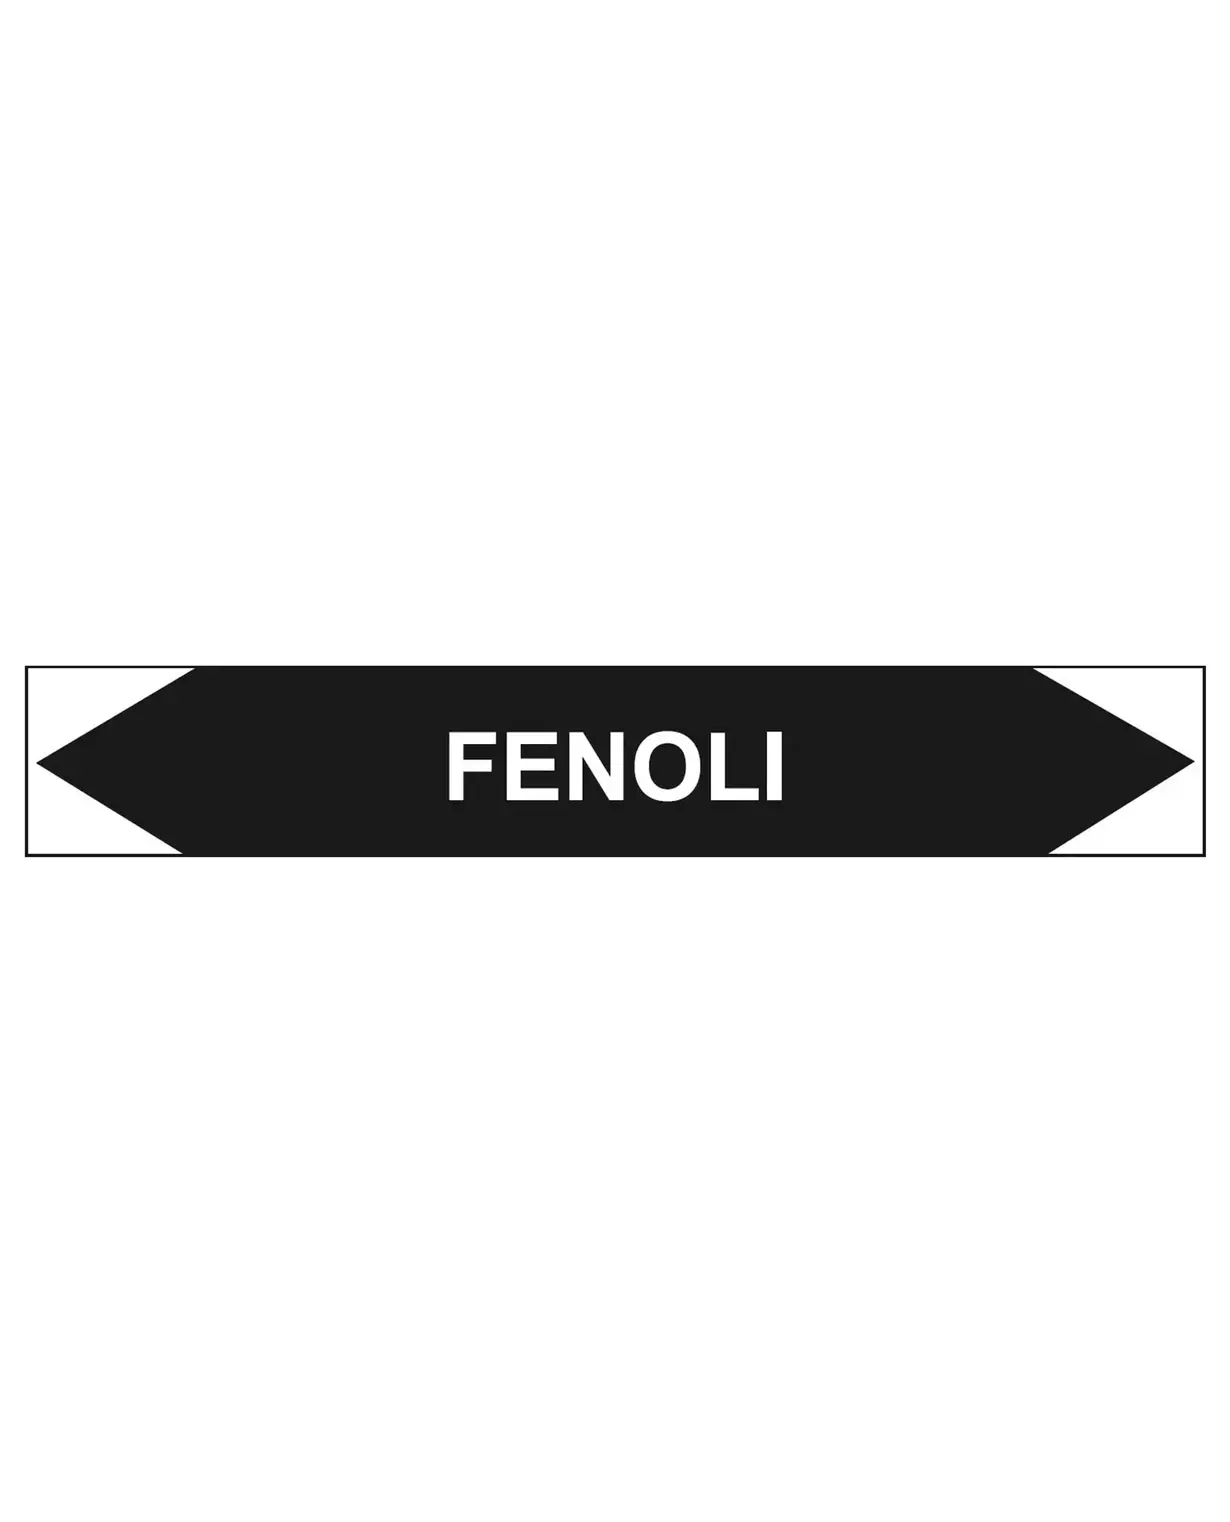 Fenoli, 250x40 mm